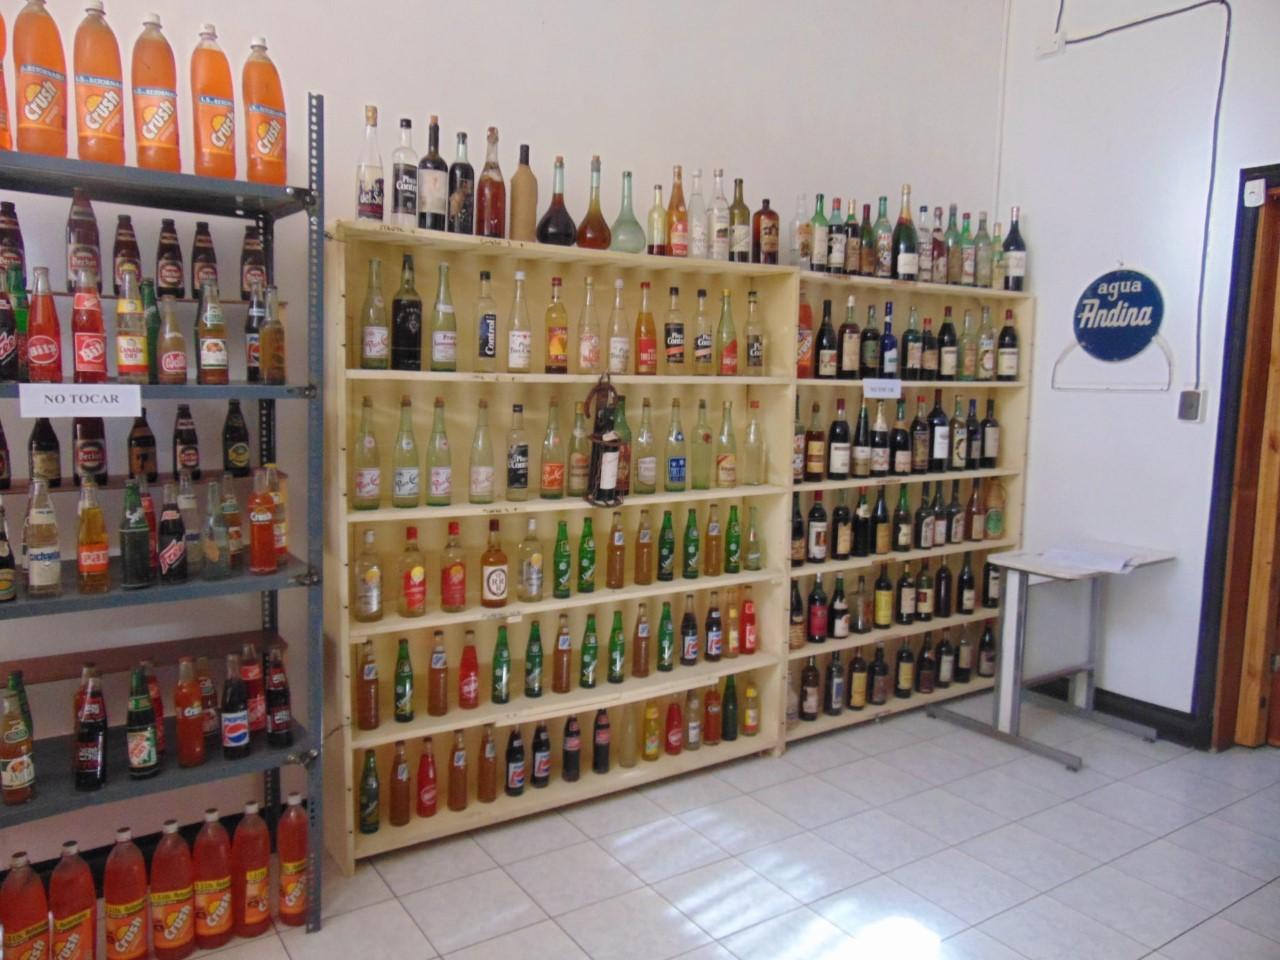 Fotografía en que se aprecia una repisa de varios niveles pegada a la pared, la cual contiene variedad de botellas de licores, bebidas y otros bebestibles de antaño.